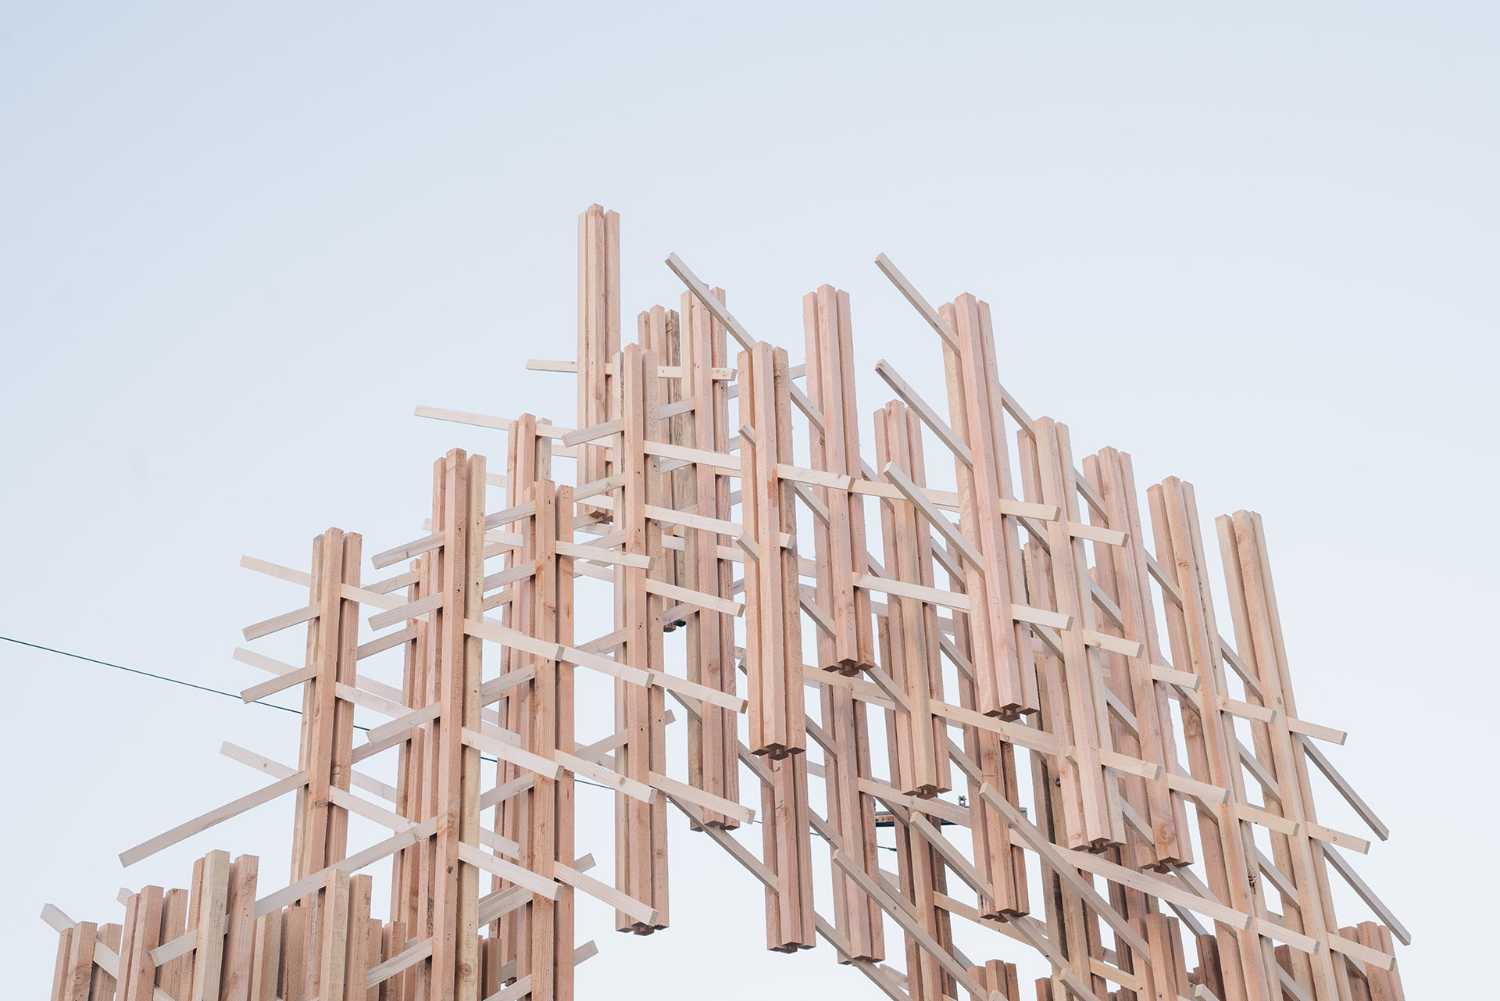 Mori. Un’installazione in legno a Los Angeles che concettualizza il senso di unione